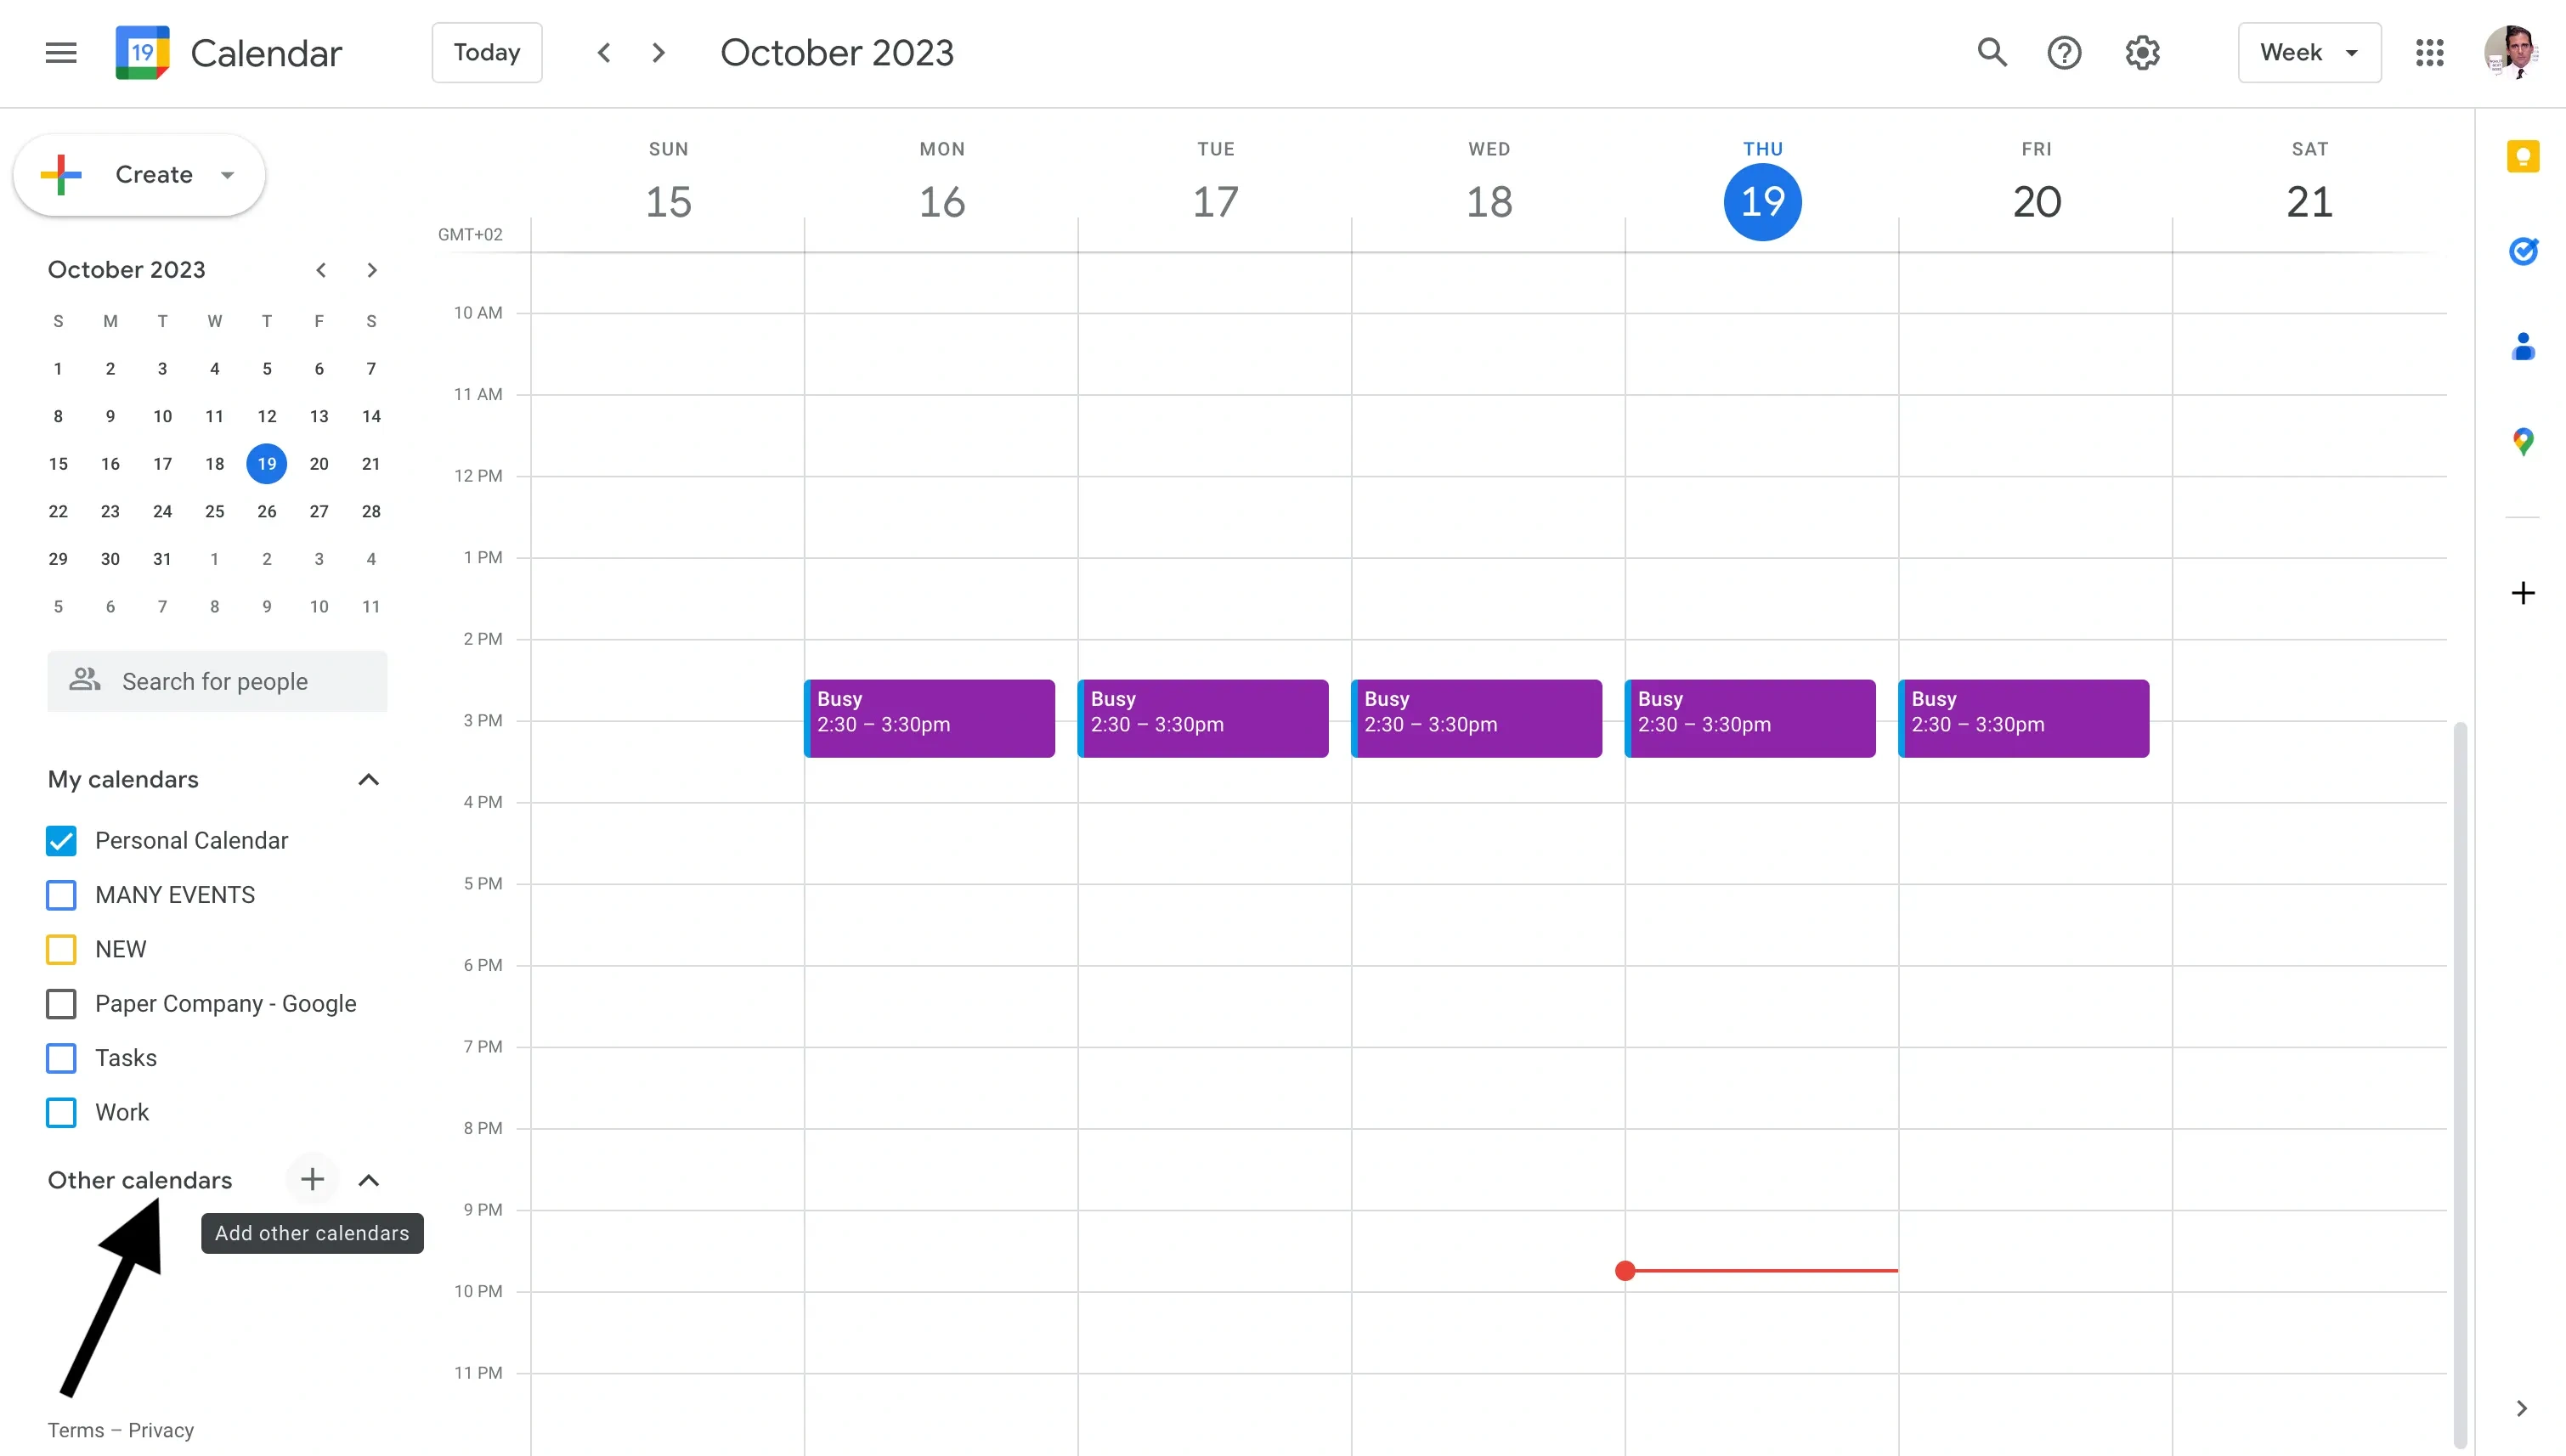 Google Calendar - Other Calendars section